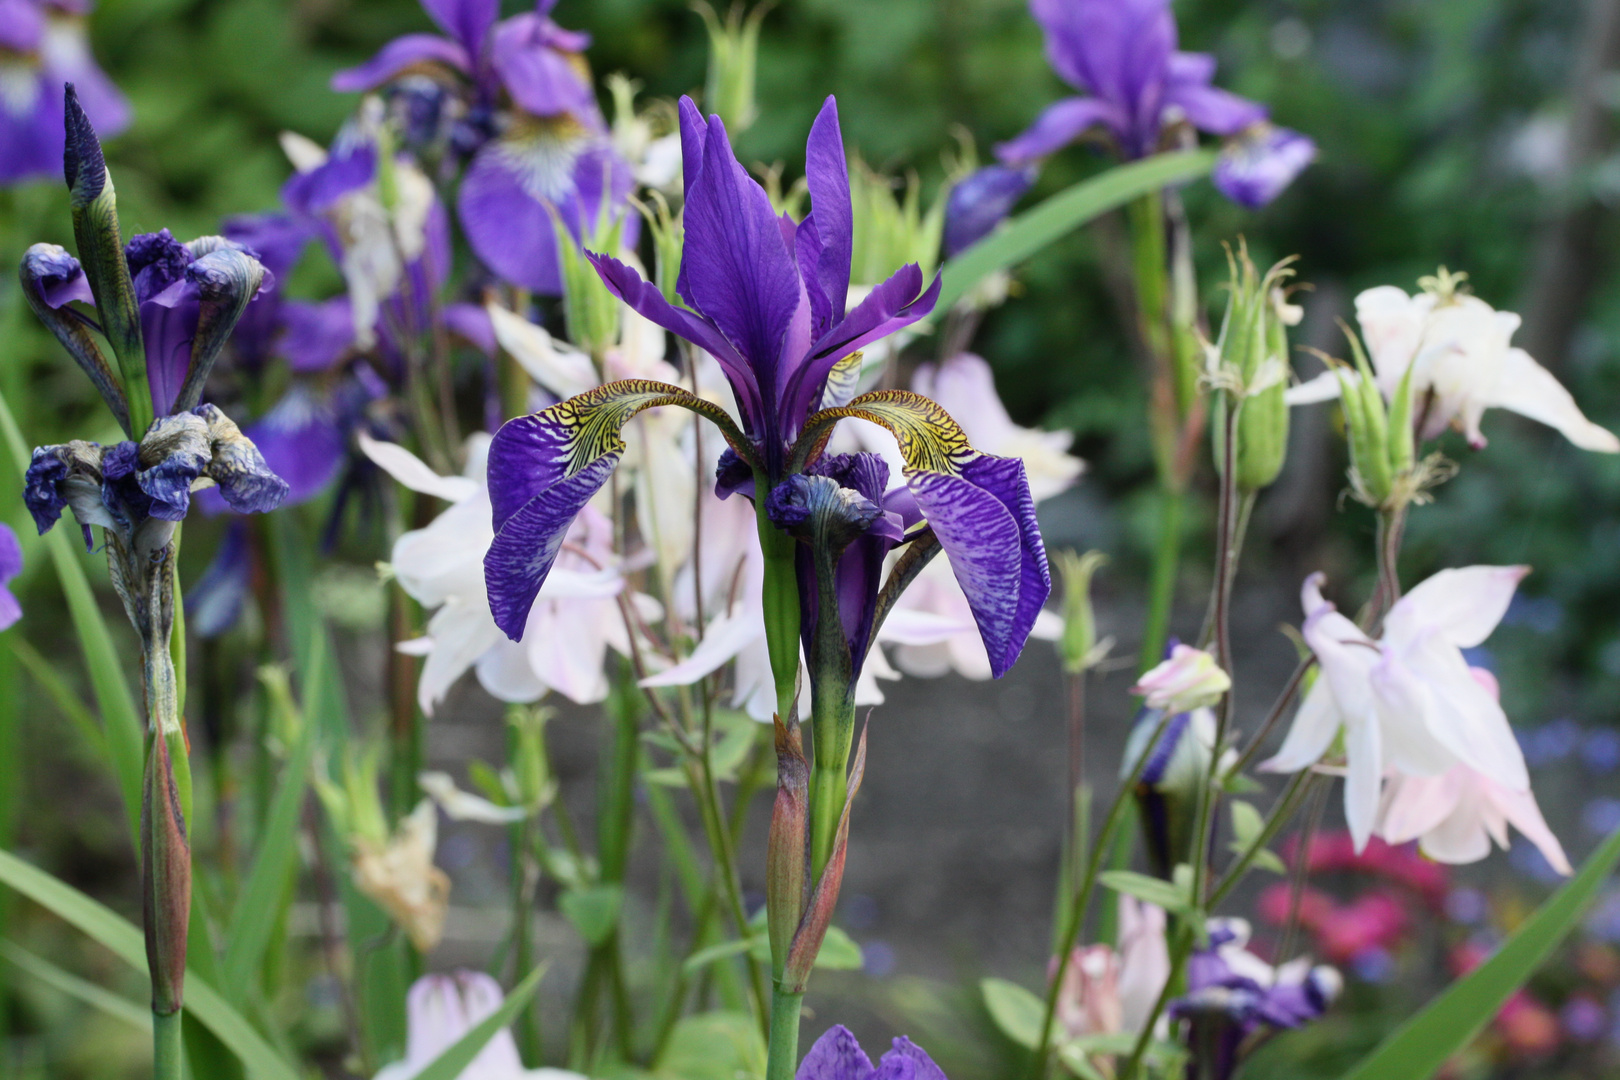 Irisblüte im Eriskircher Ried